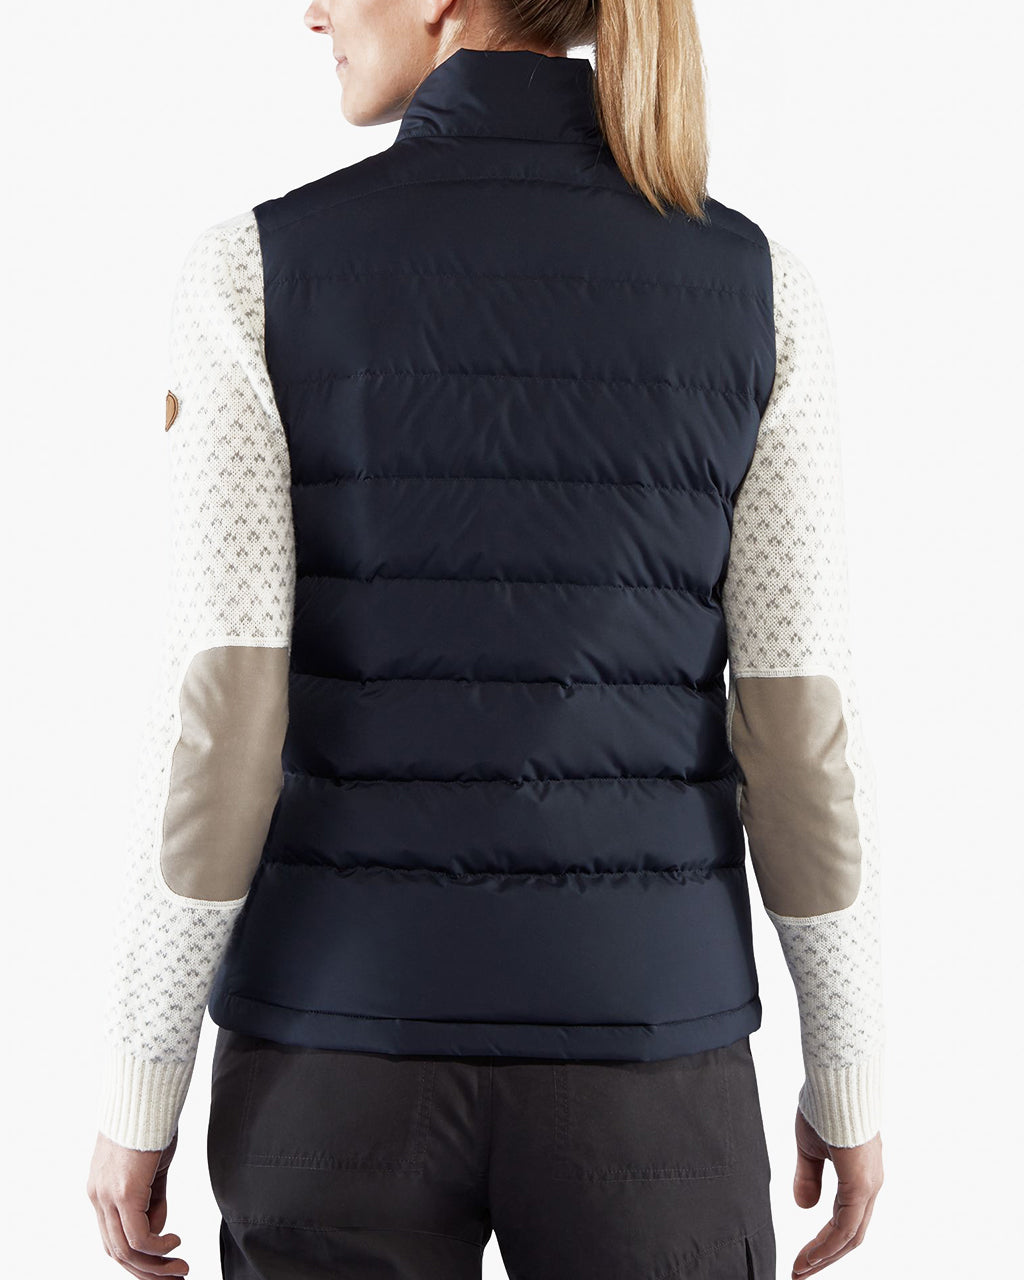 Duplicatie overtuigen Haarvaten Fjallraven Greenland Down Liner Vest: Insulating and Packable Gear –  BrandsWalk